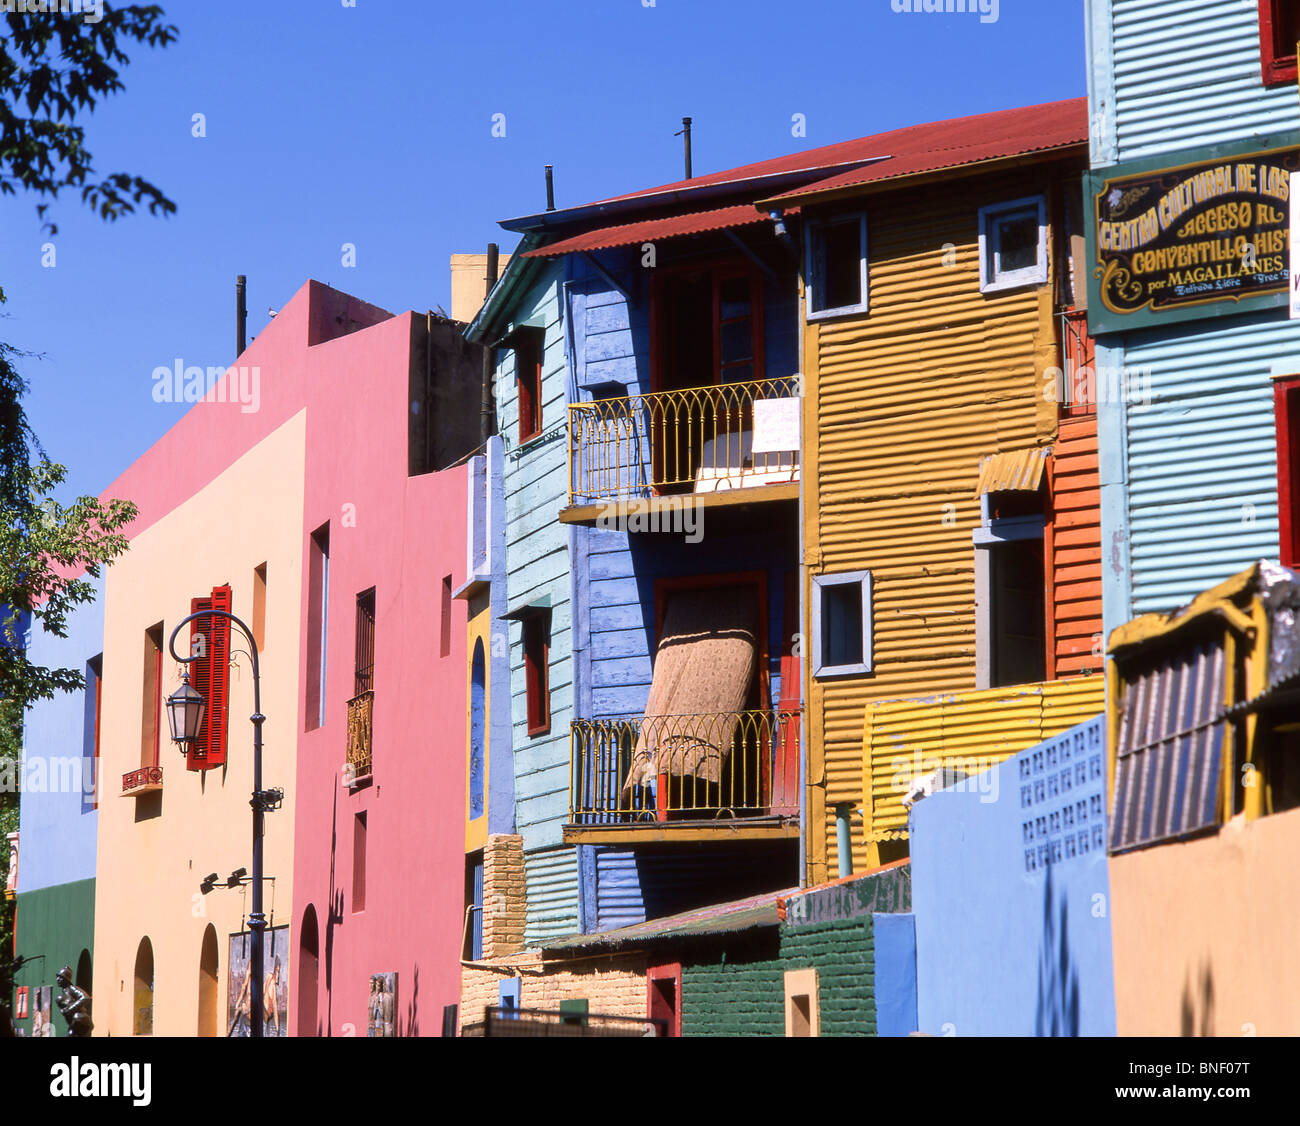 Les bâtiments aux couleurs pastel, la rue Caminito, la Boca, Buenos Aires, Argentine Banque D'Images